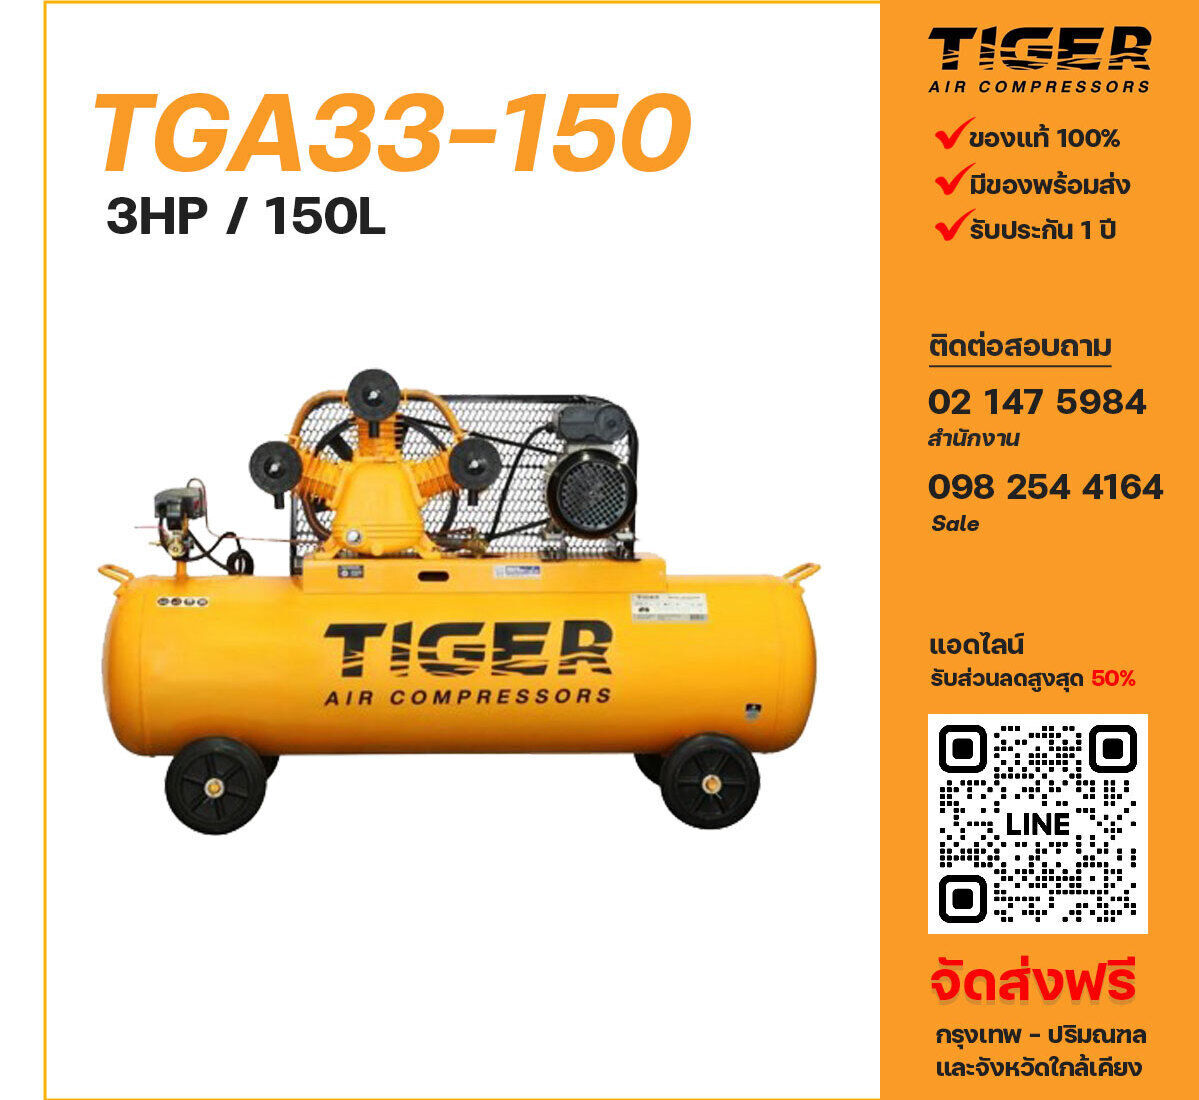 ปั๊มลมไทเกอร์ TIGER TGA33-150 220V ปั๊มลมลูกสูบ ขนาด 3 สูบ 3 แรงม้า 150 ลิตร TIGER พร้อมมอเตอร์ ไฟ 220V ส่งฟรี กรุงเทพฯ-ปริมณฑล รับประกัน 1 ปี